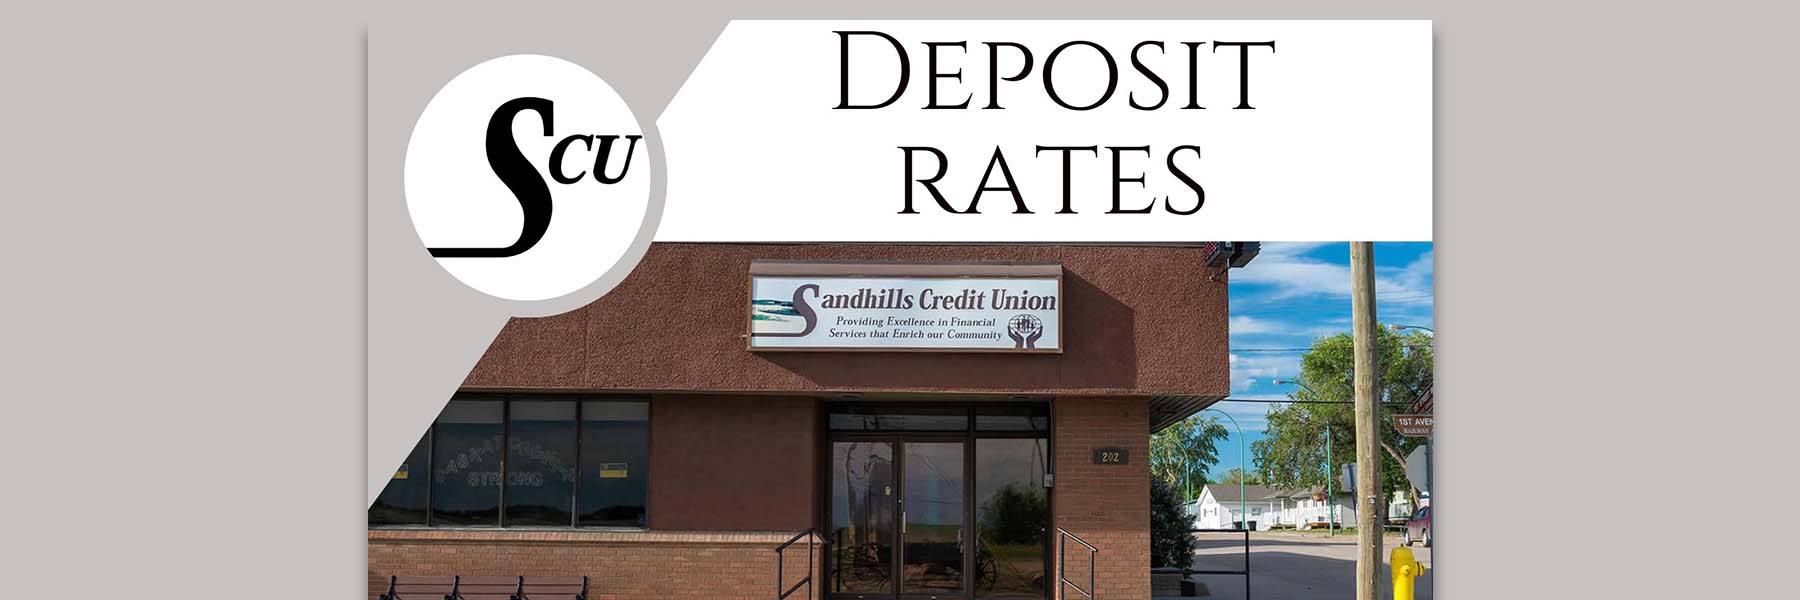 Deposit Rates at Sandhills Credit Union